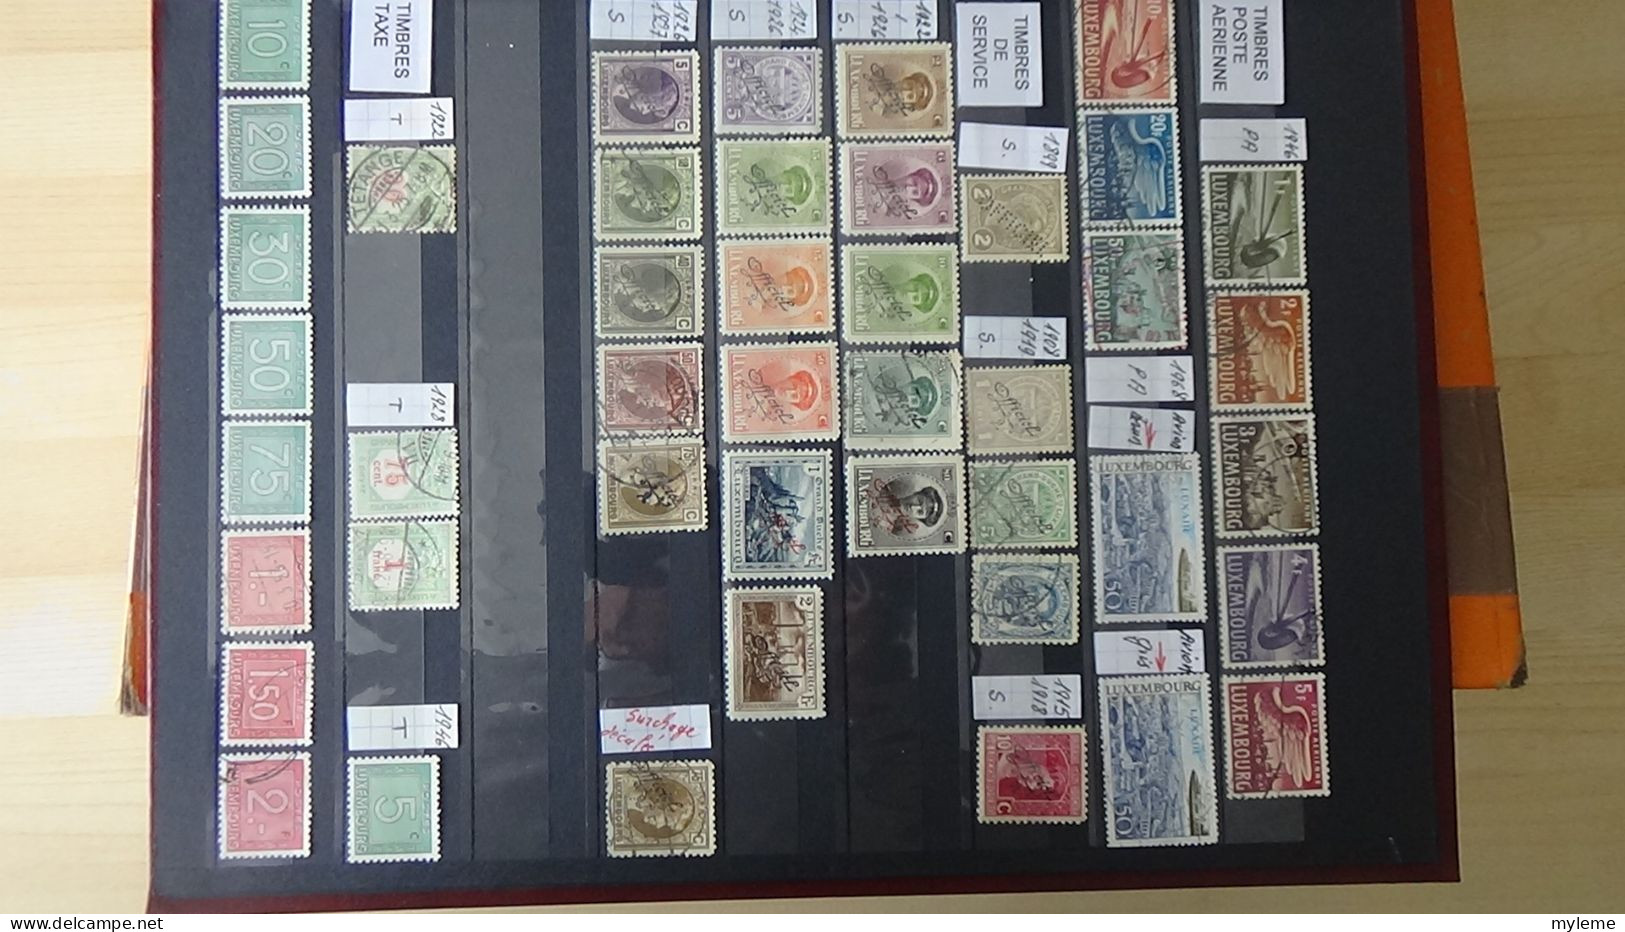 BF48 Bel ensemble de timbres de divers pays dont N° 61 + 75 + 77 ** avec petits défauts. A saisir !!!